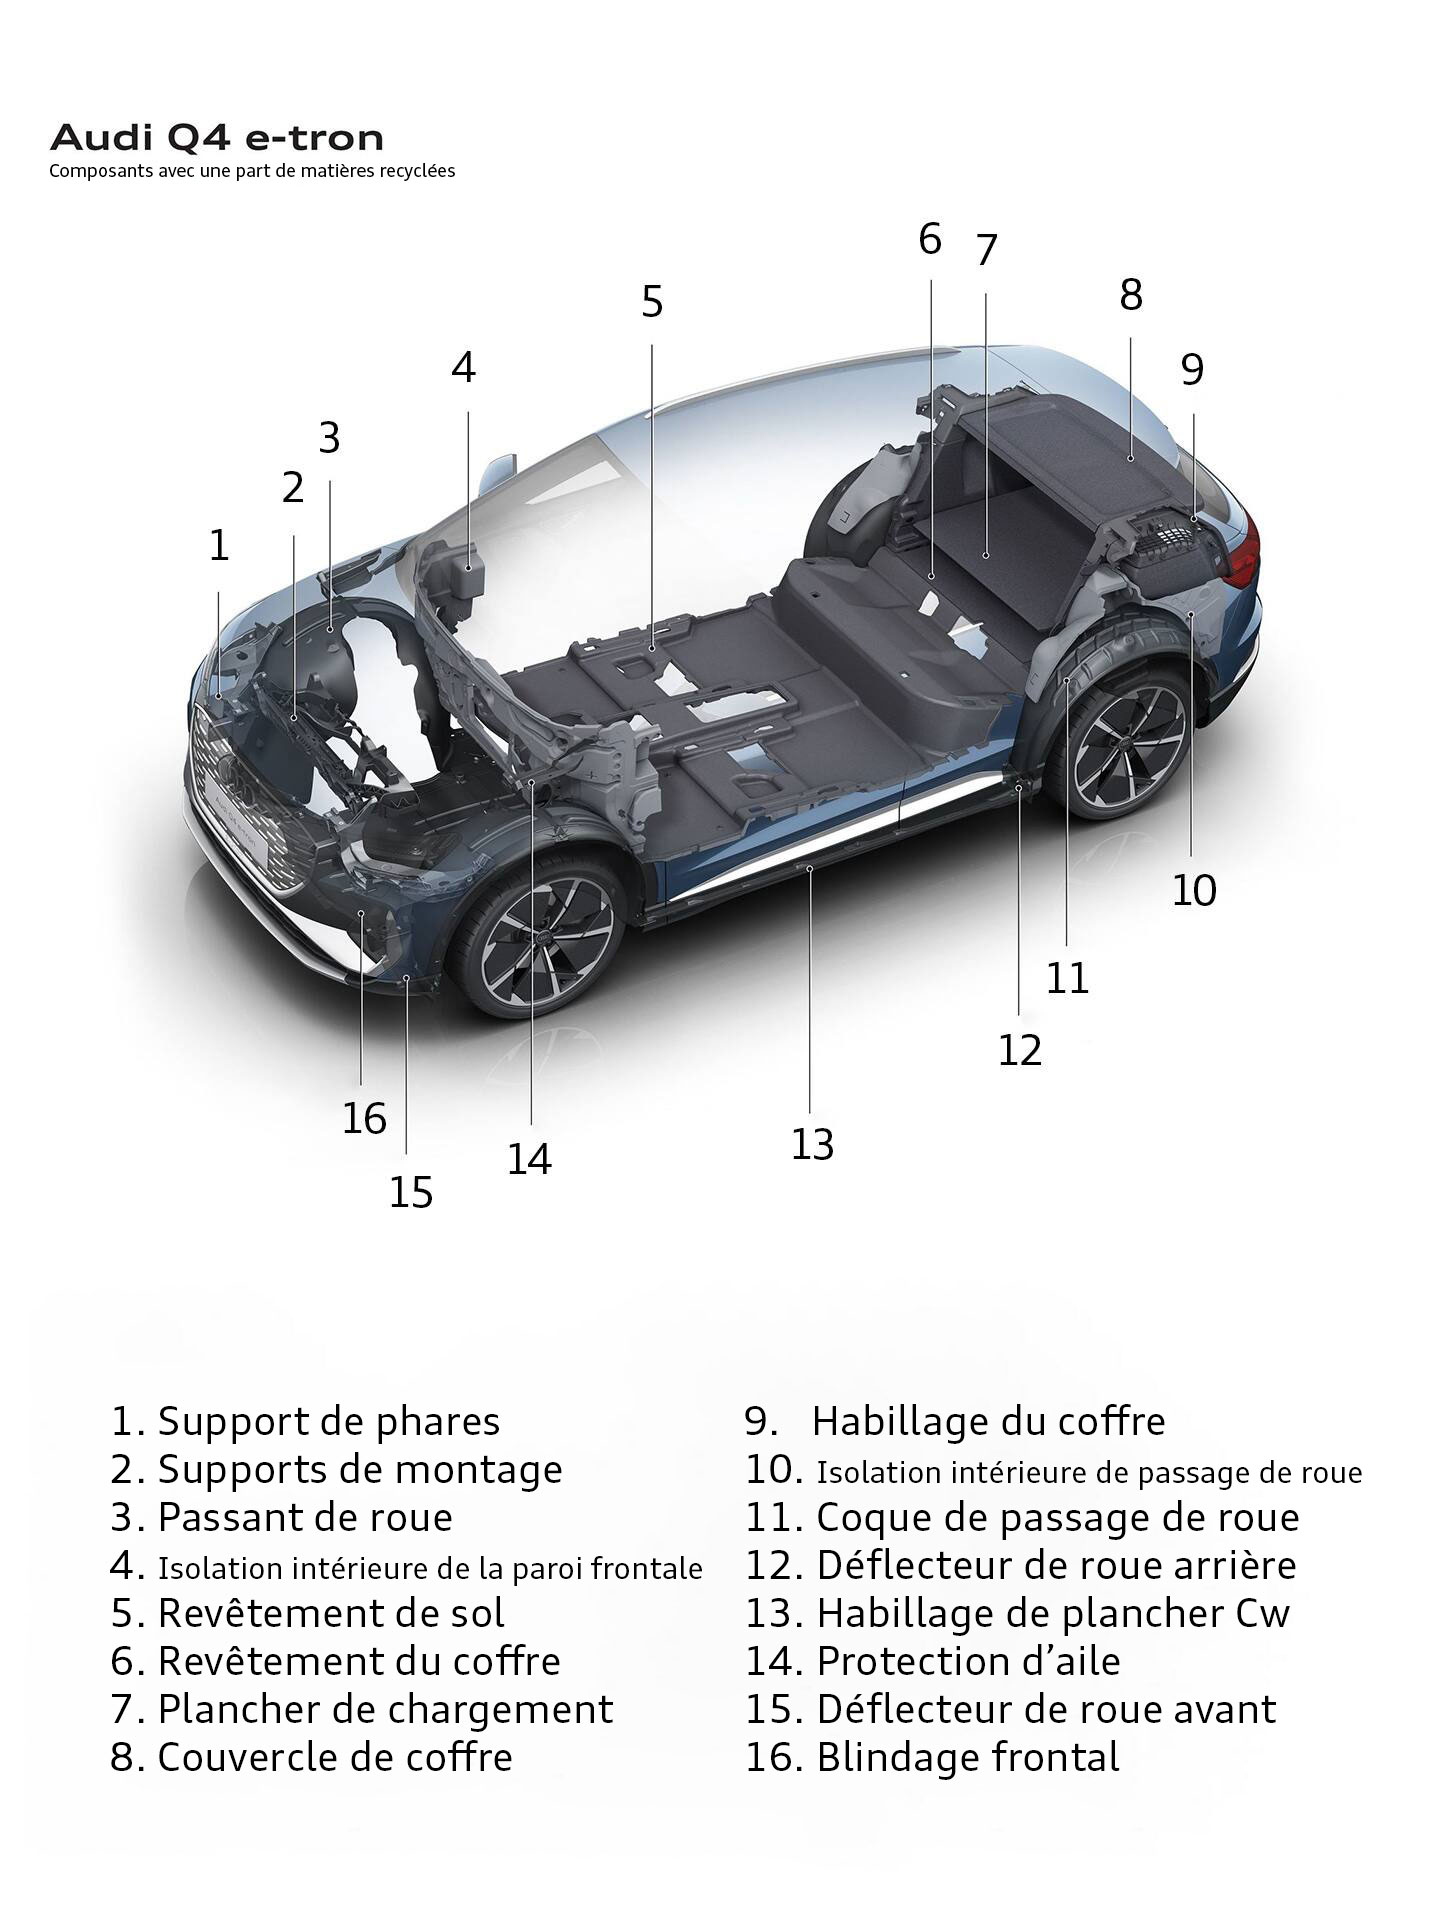 Übersicht Rezyklatbauteile Audi Q4 e-tron